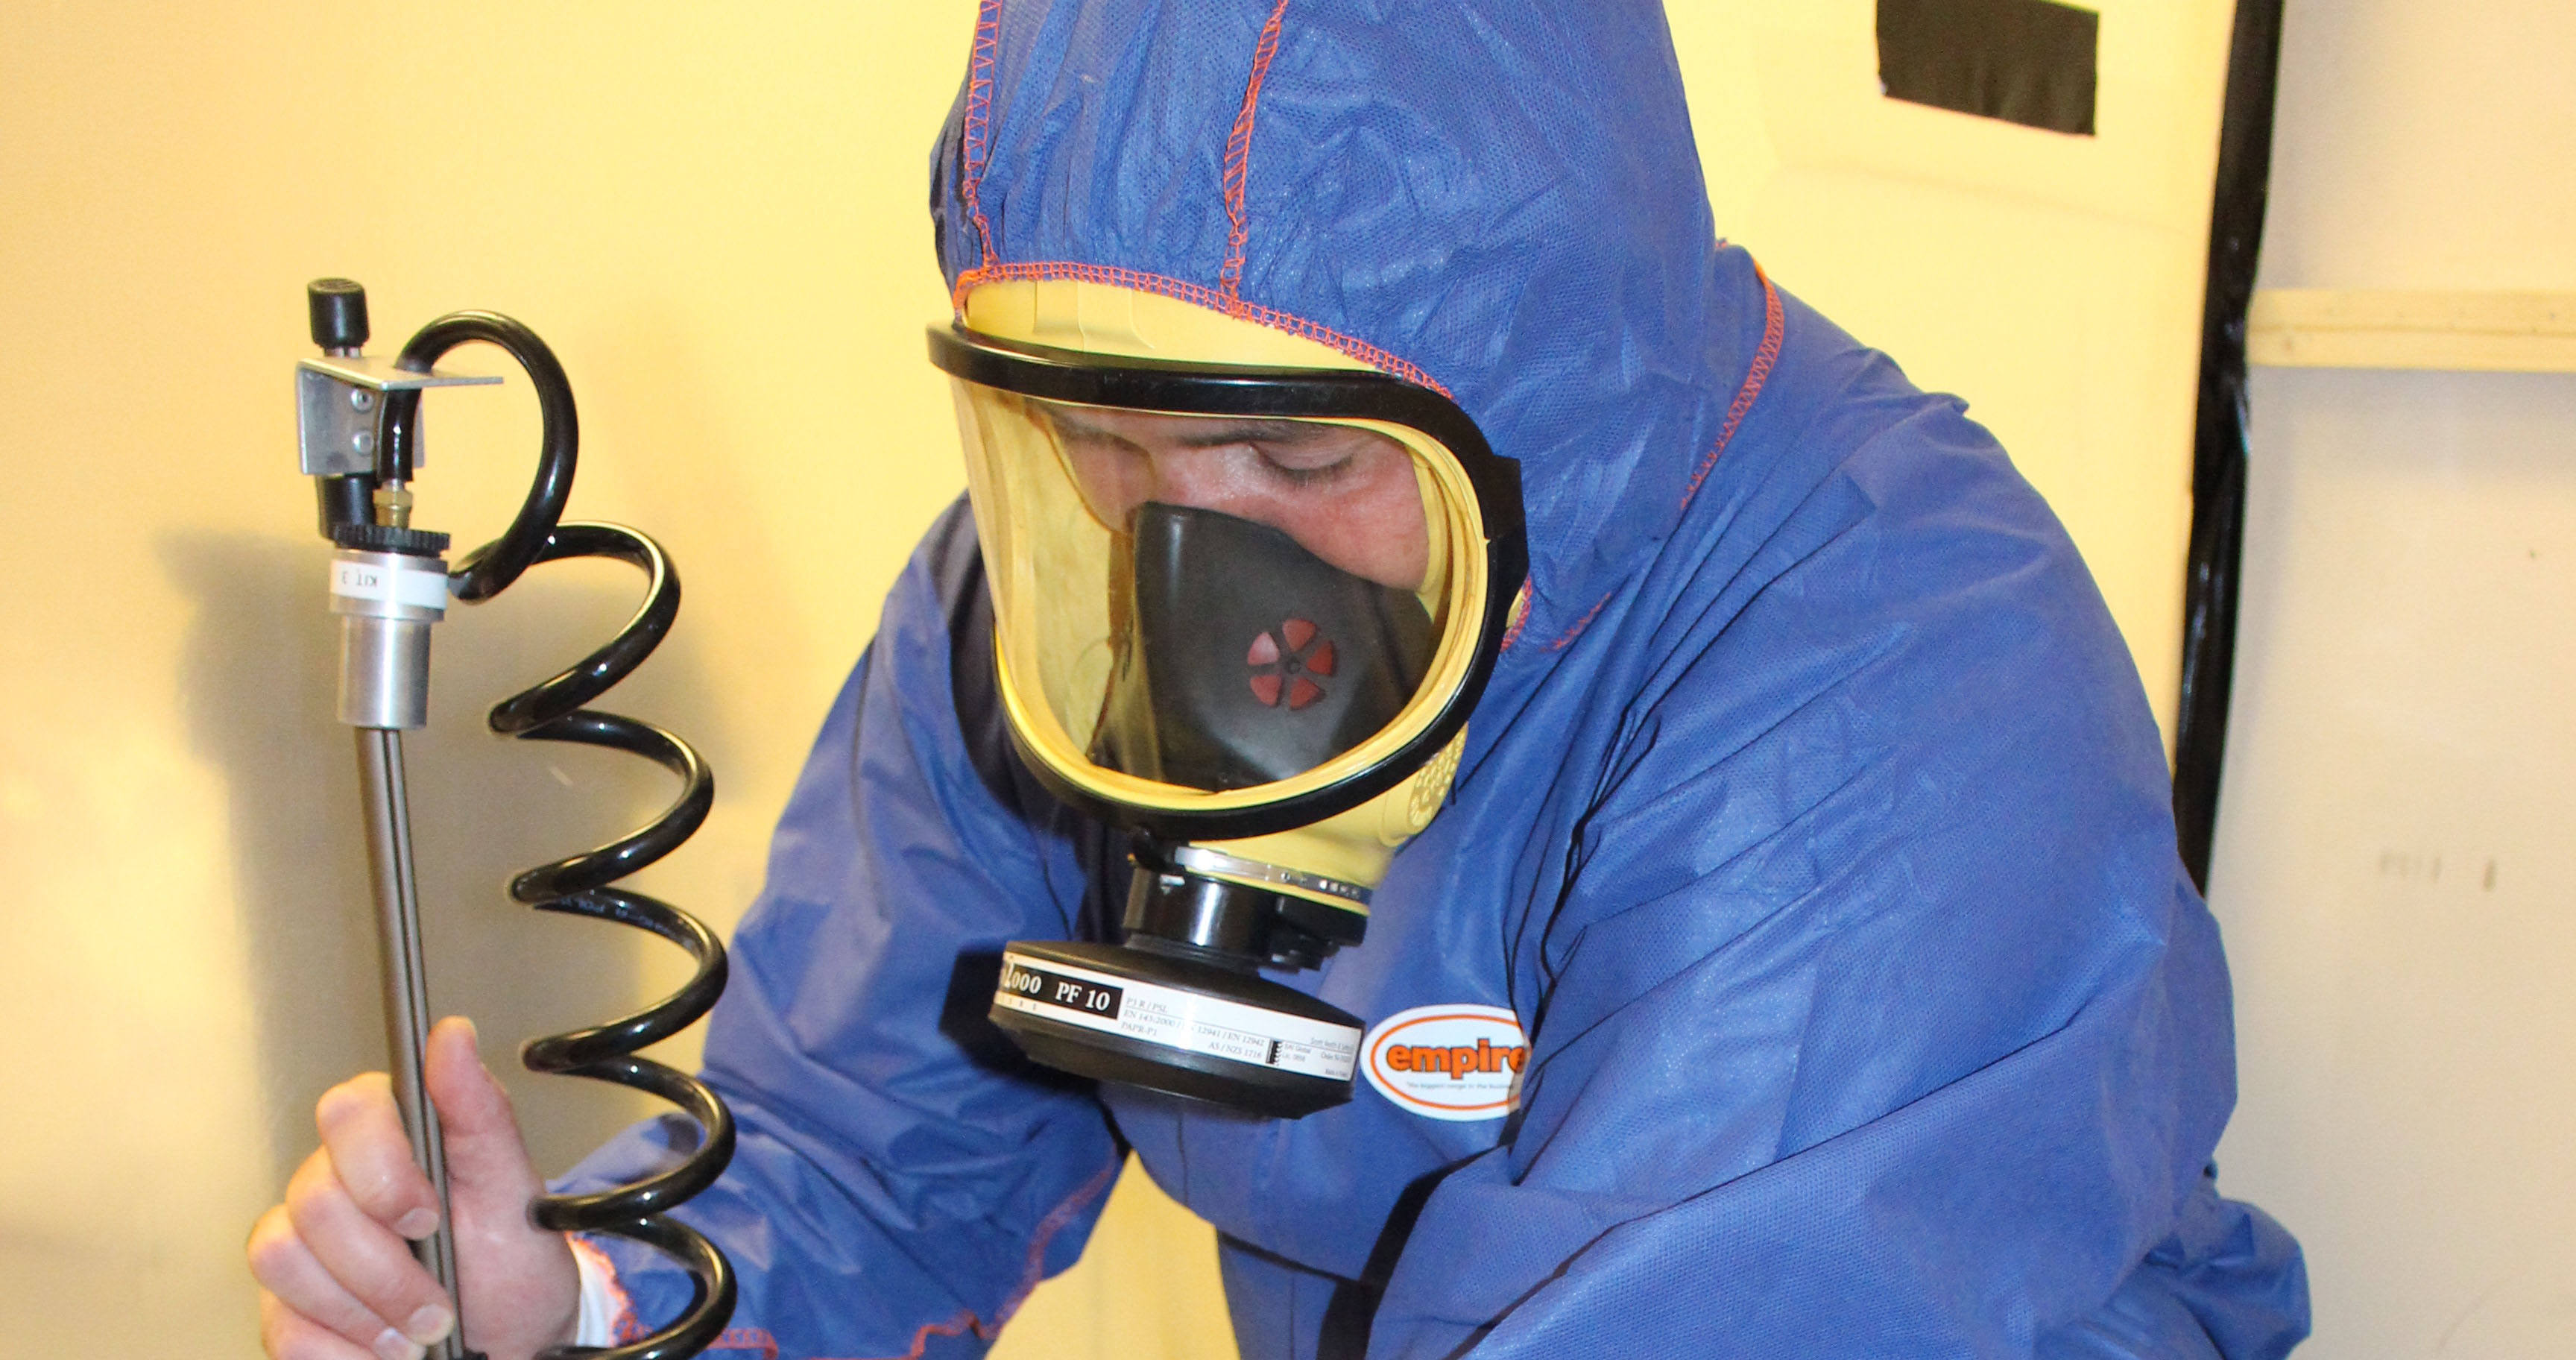 Unduh 650 Background Asbestos Air Sampling Gratis Terbaru